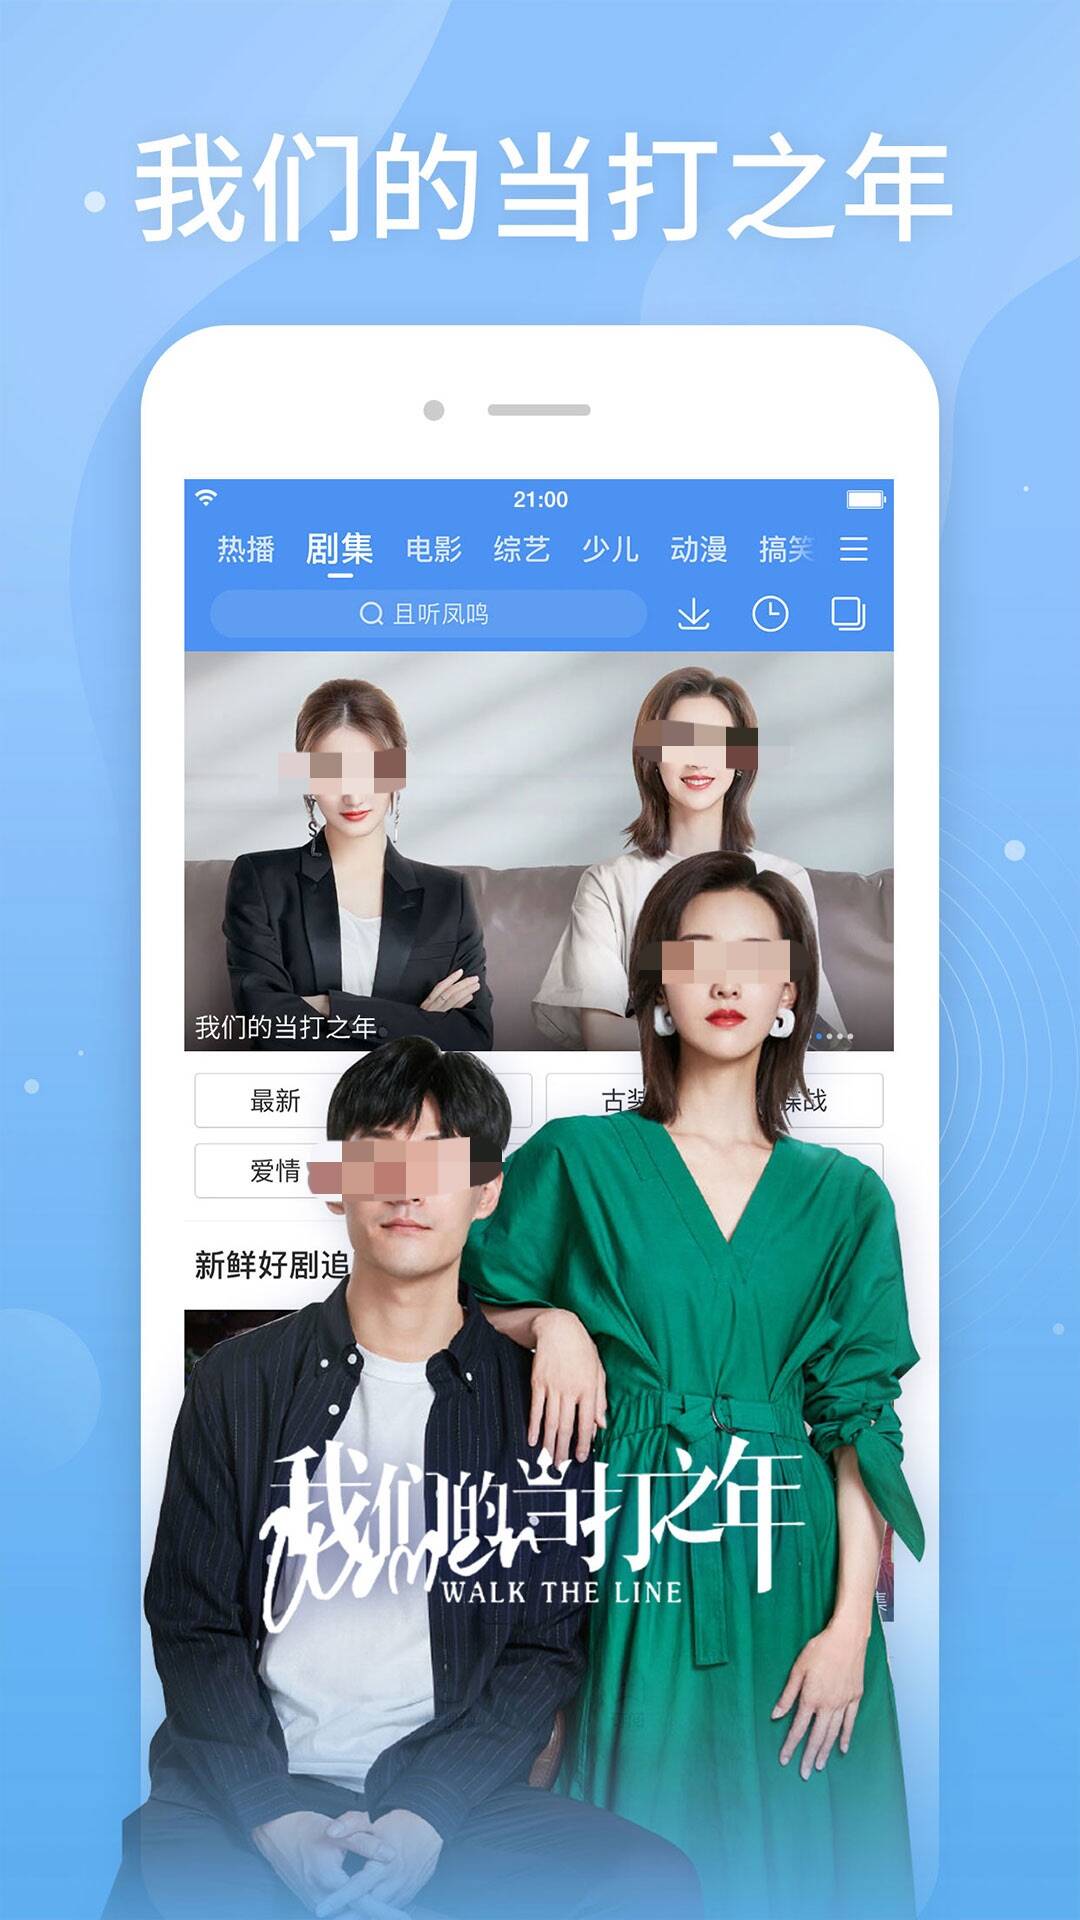 日剧tv下载app推荐 日剧观影app哪个更好用